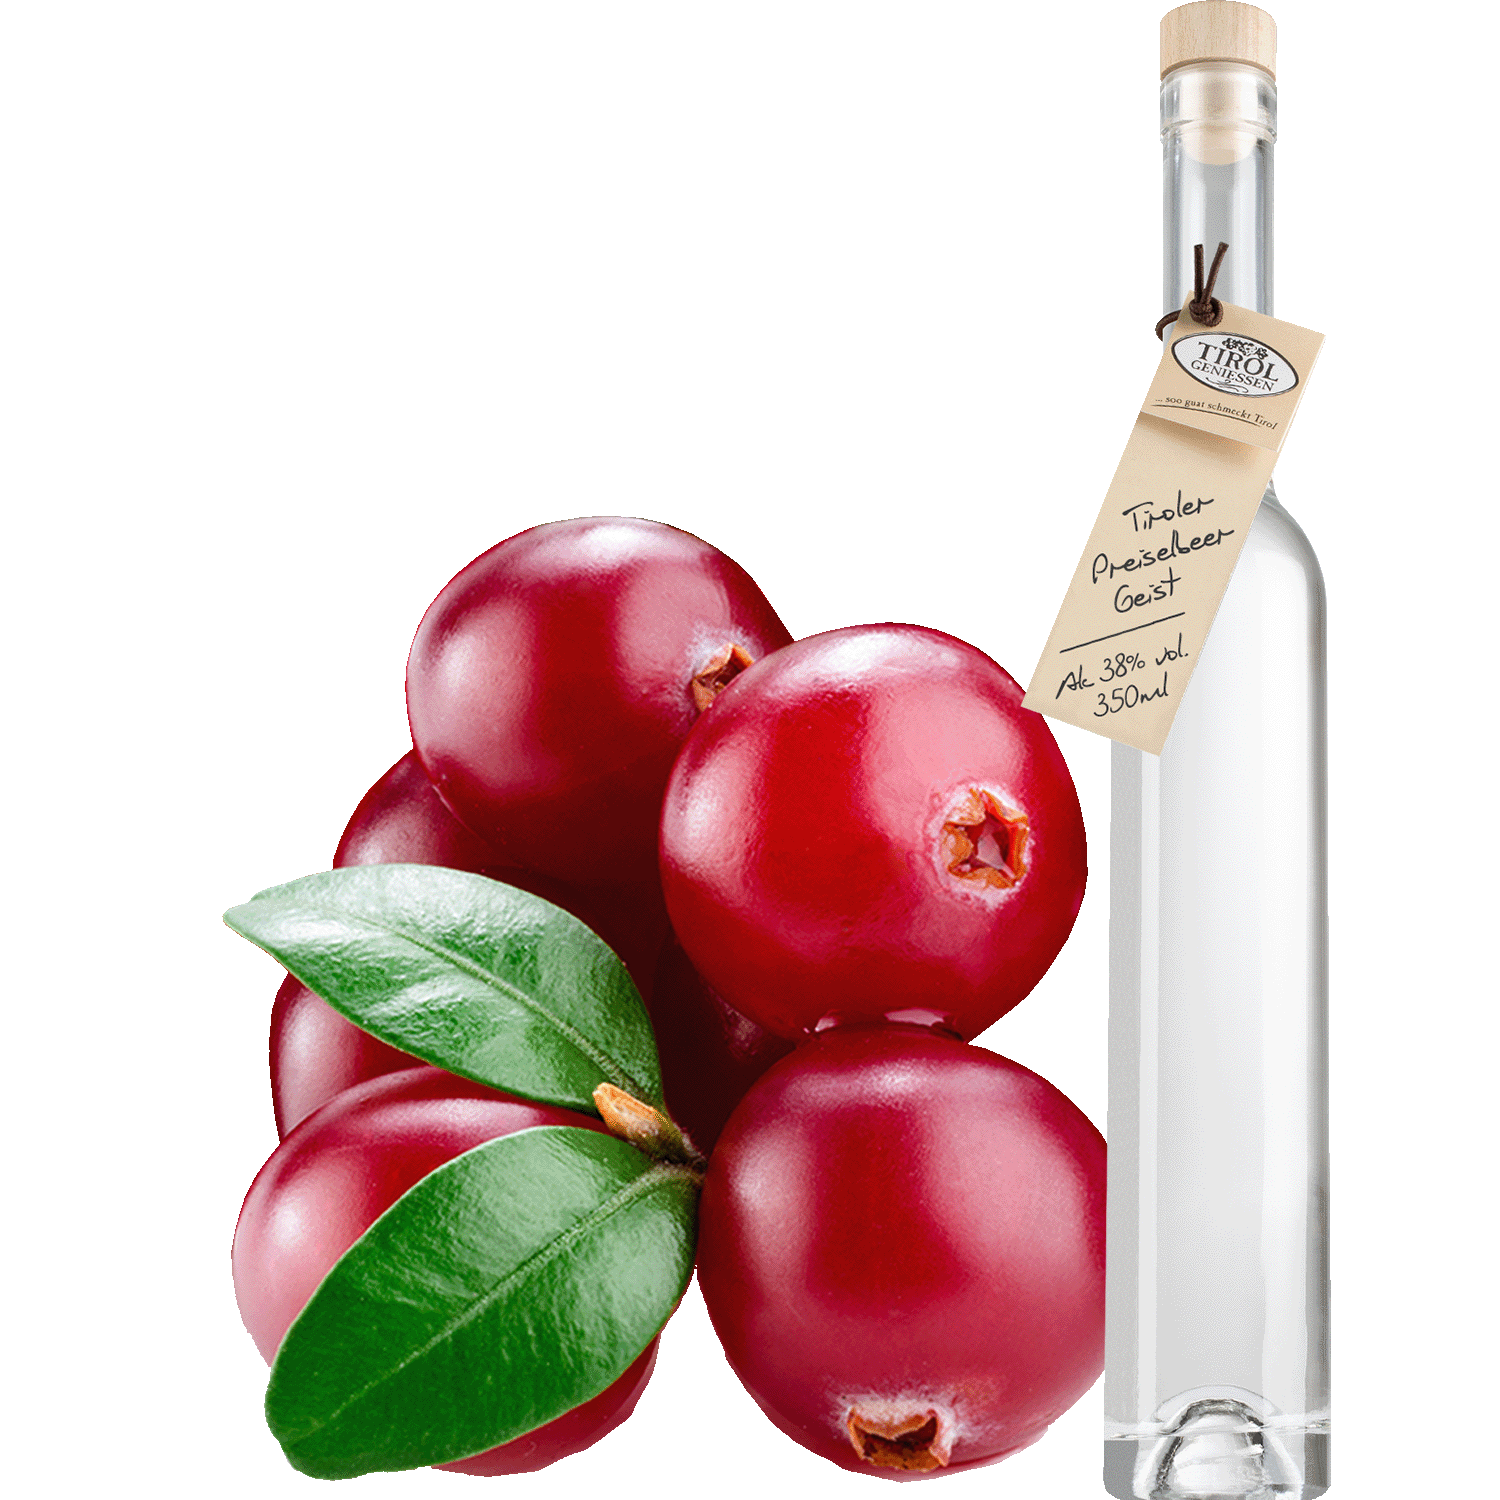 Lingonberry Spirit in gift bottle from Austria from Tirol Geniessen